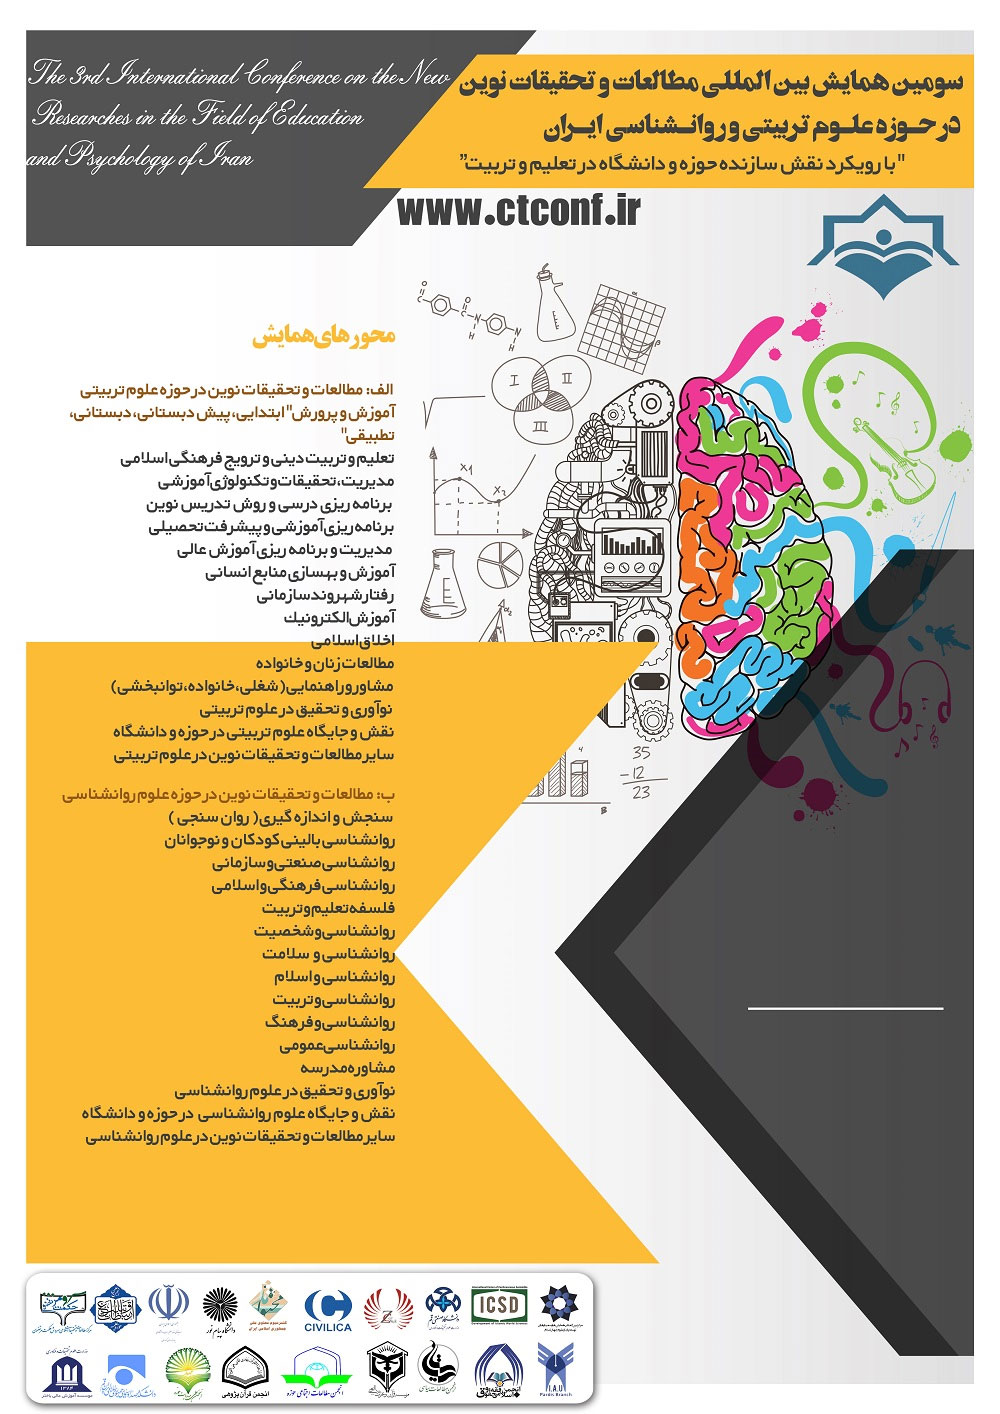 سومین همایش بین المللی مطالعات و تحقیقات نوین در حوزه علوم تربیتی و روانشناسی ایران